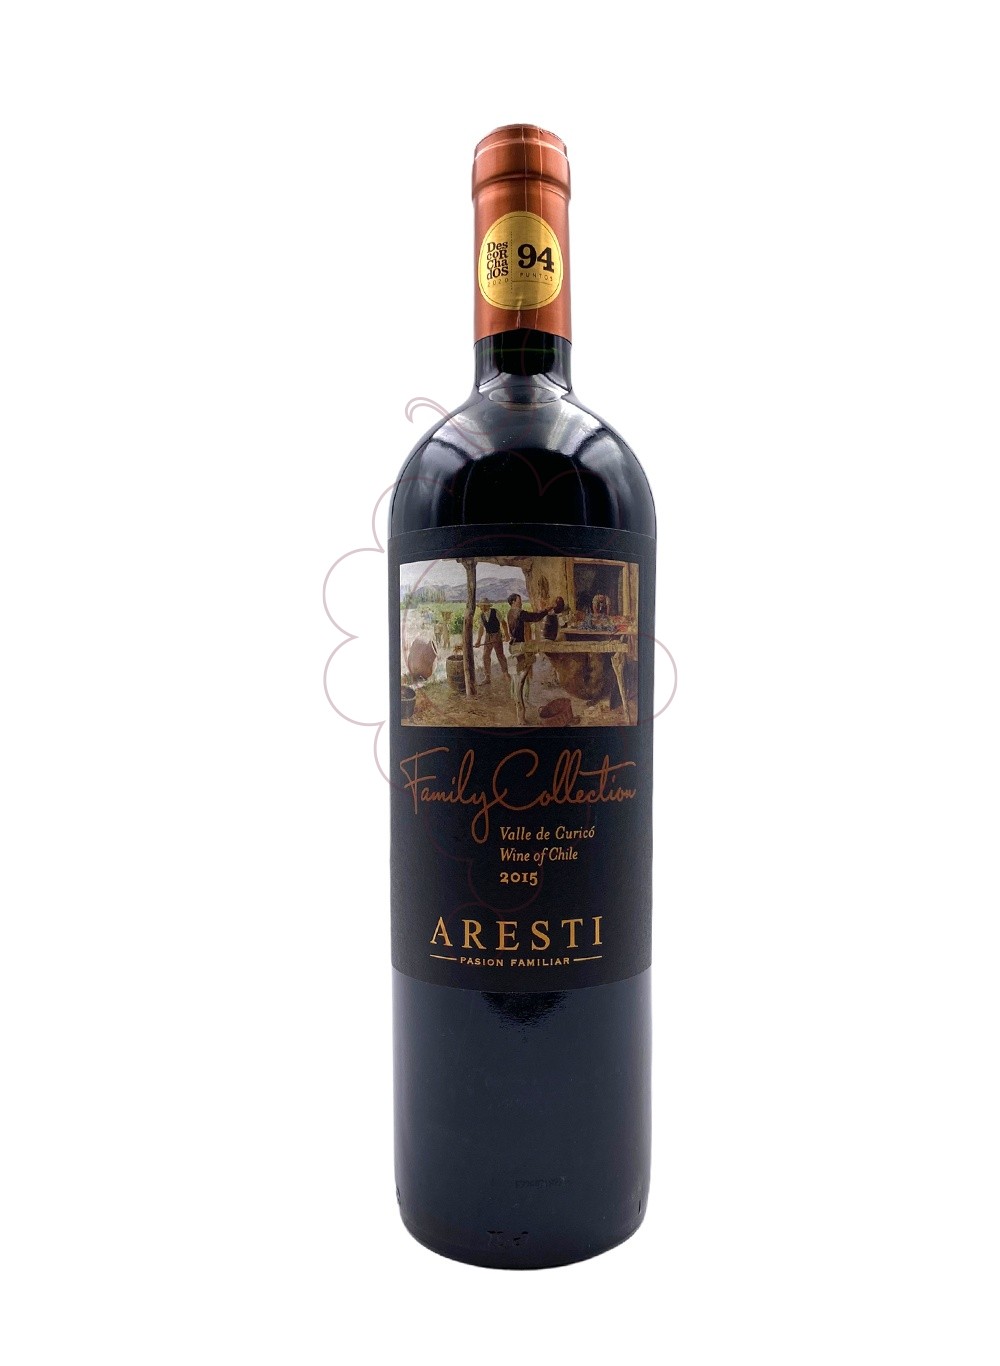 Foto Aresti Family Collection vino tinto